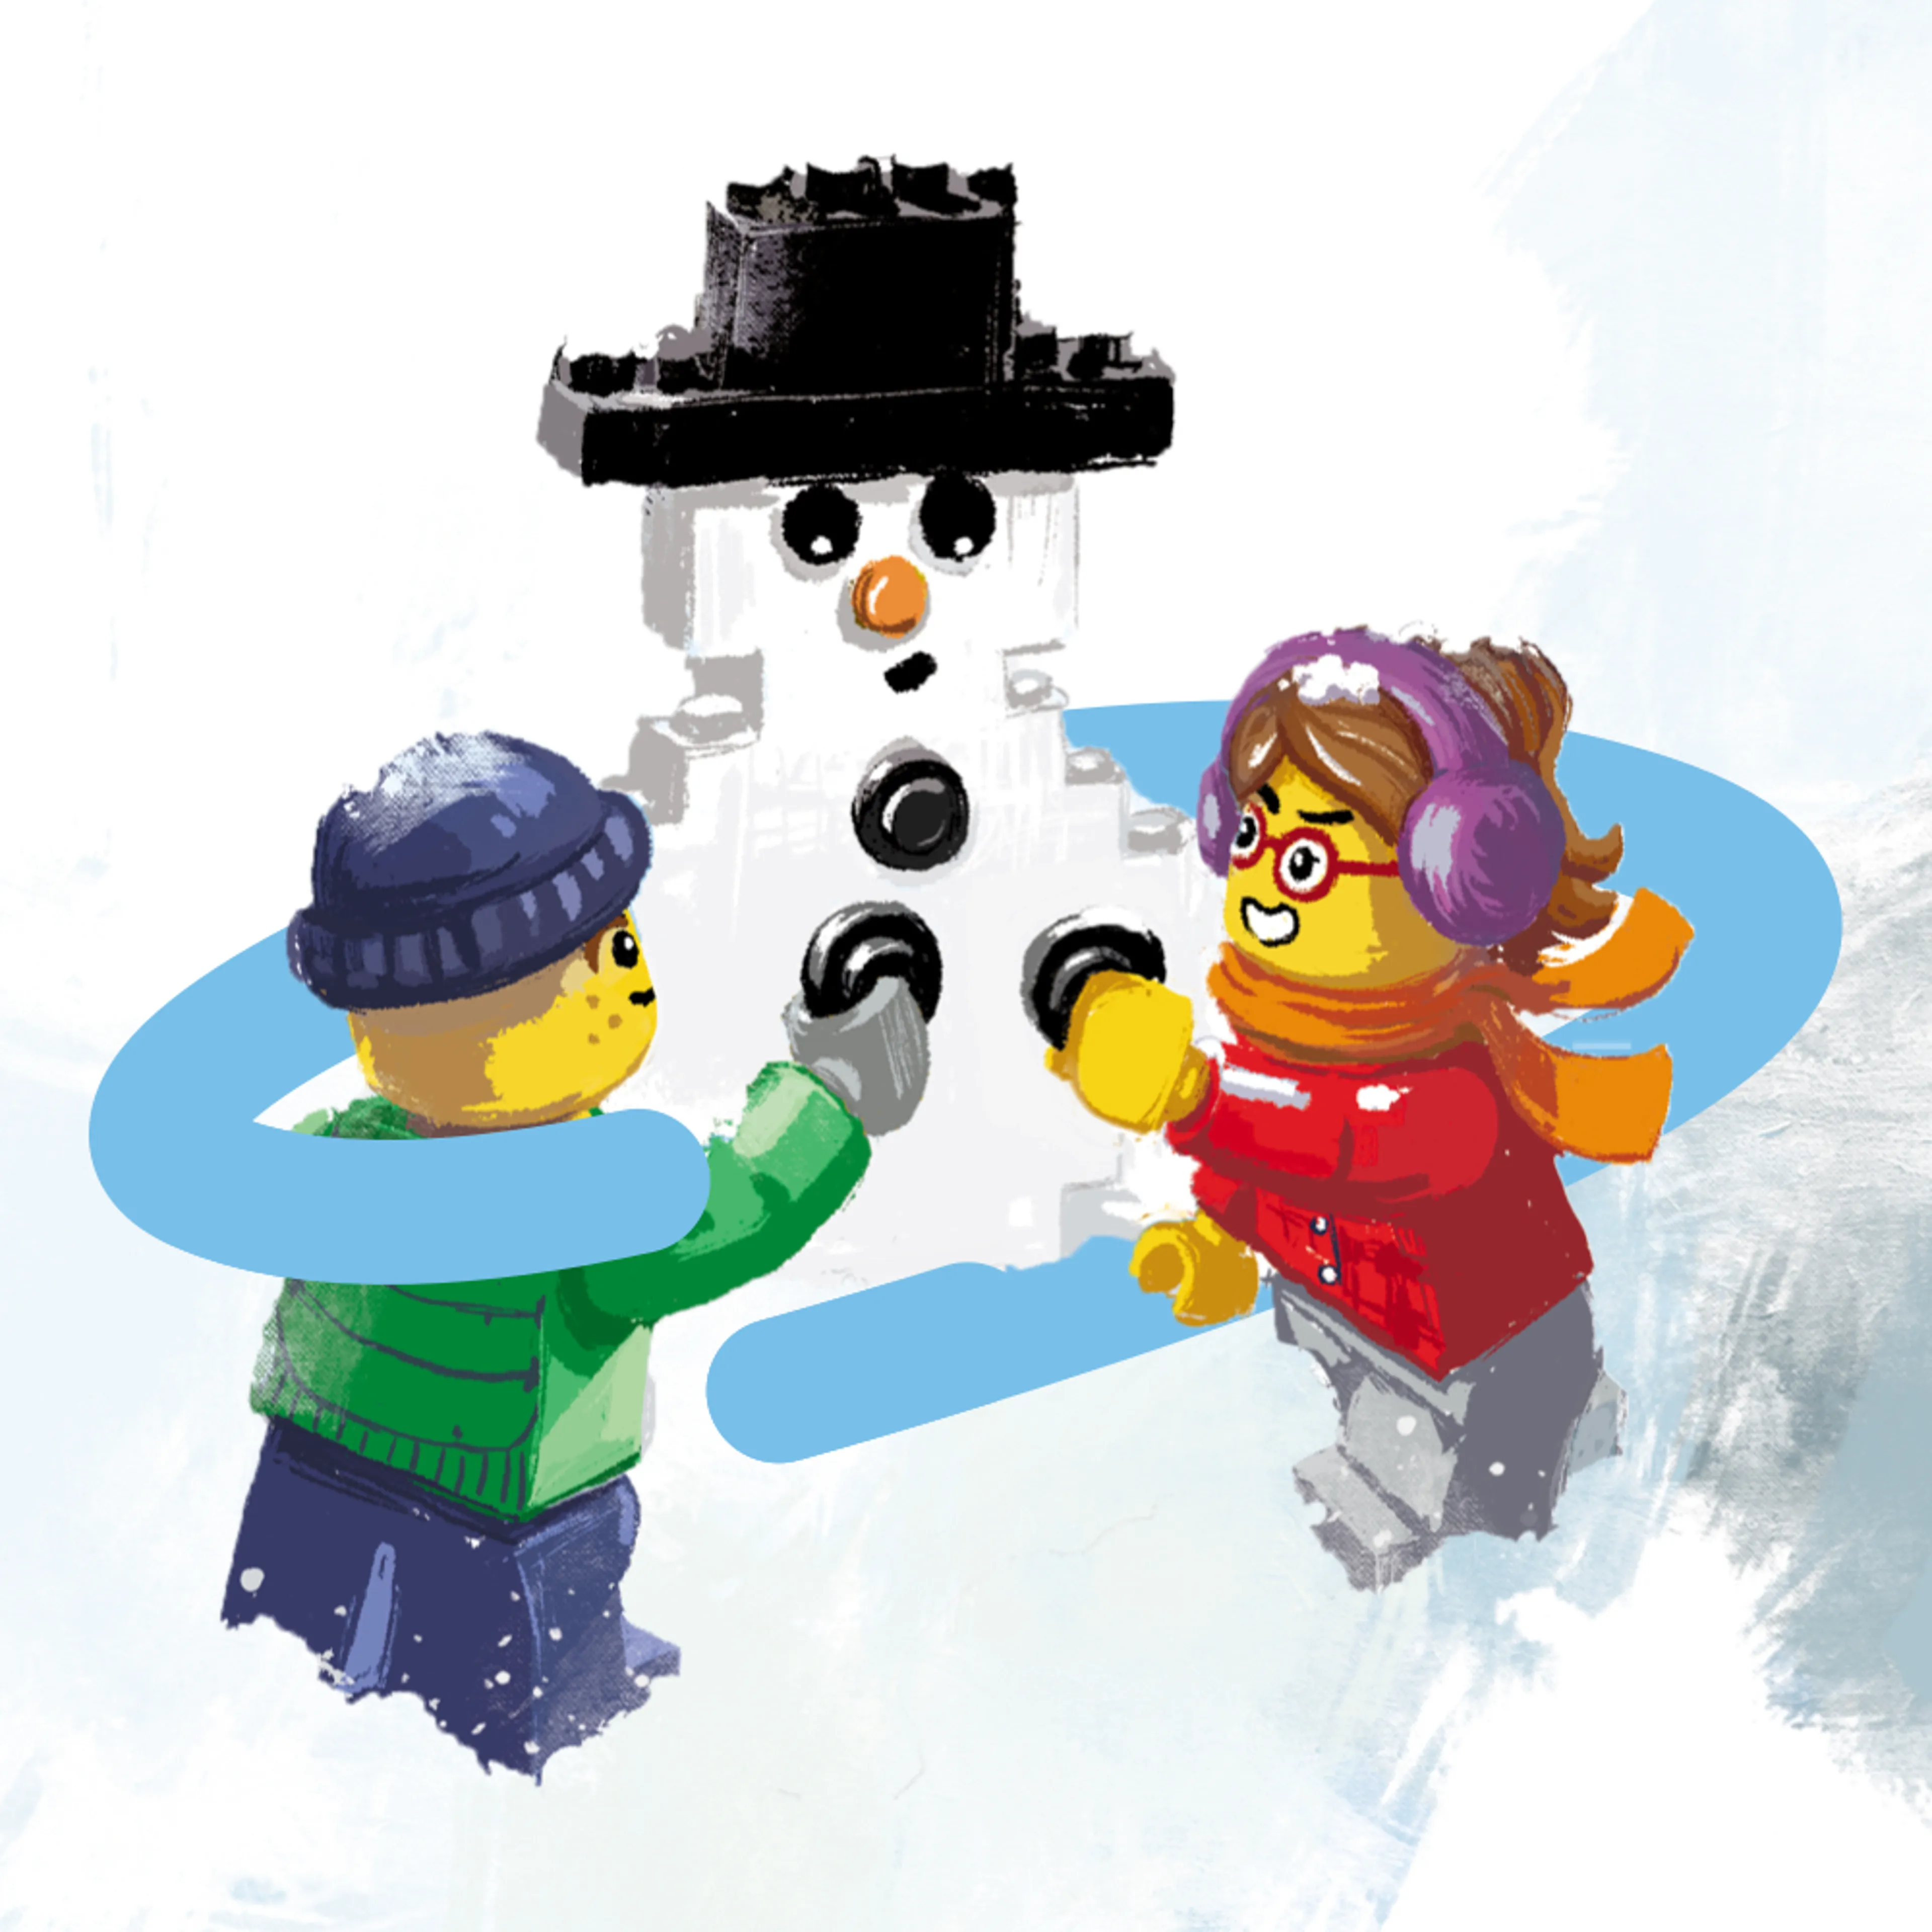 Entrez dans l'esprit festif avec le catalogue LEGO Noël 2020